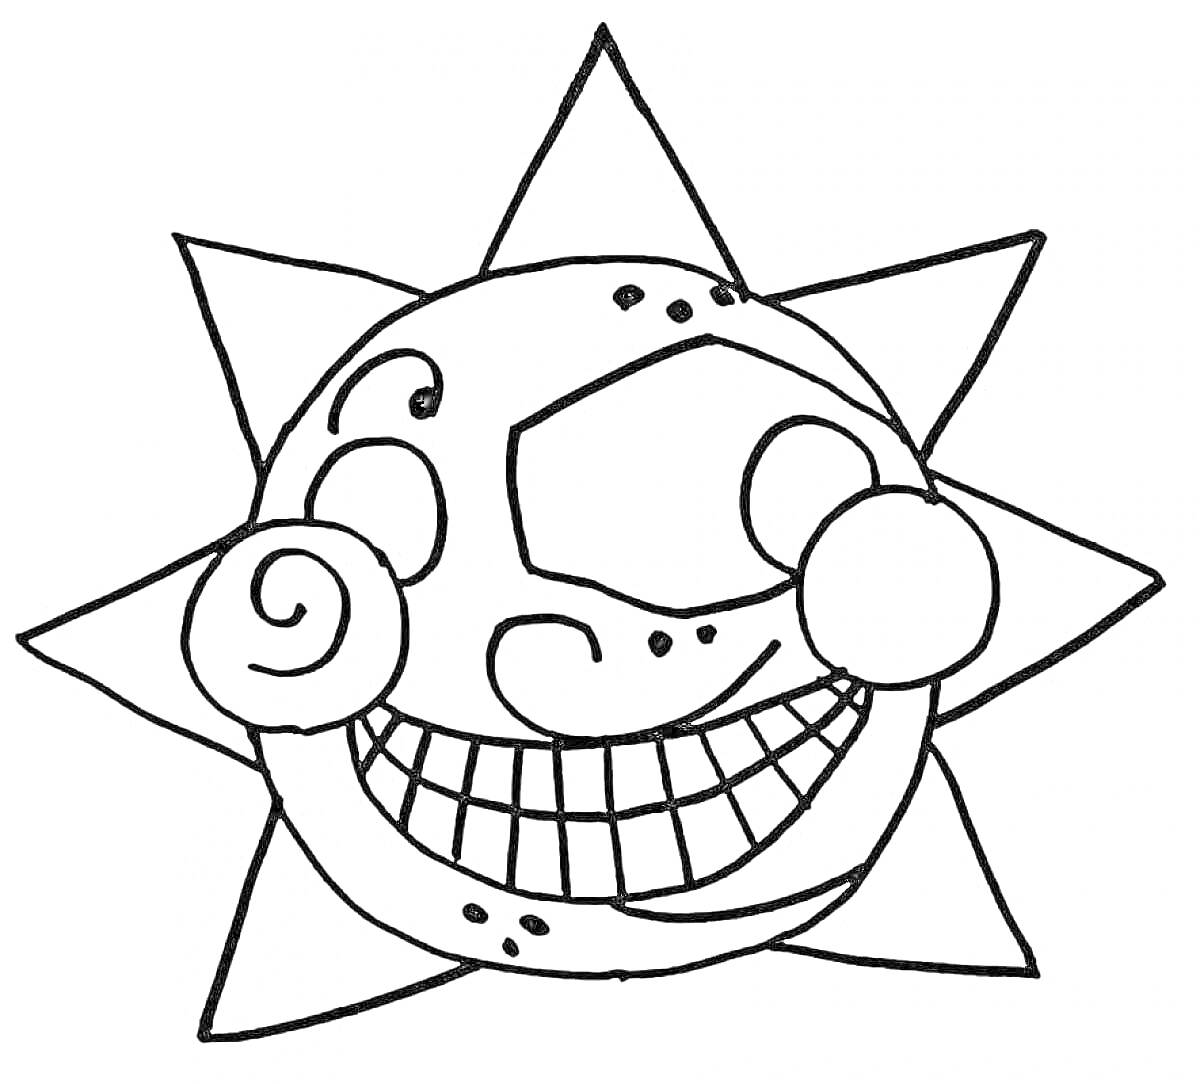 Улыбающееся солнце-аниматроник с лучами, круглыми глазками и спиральными щеками